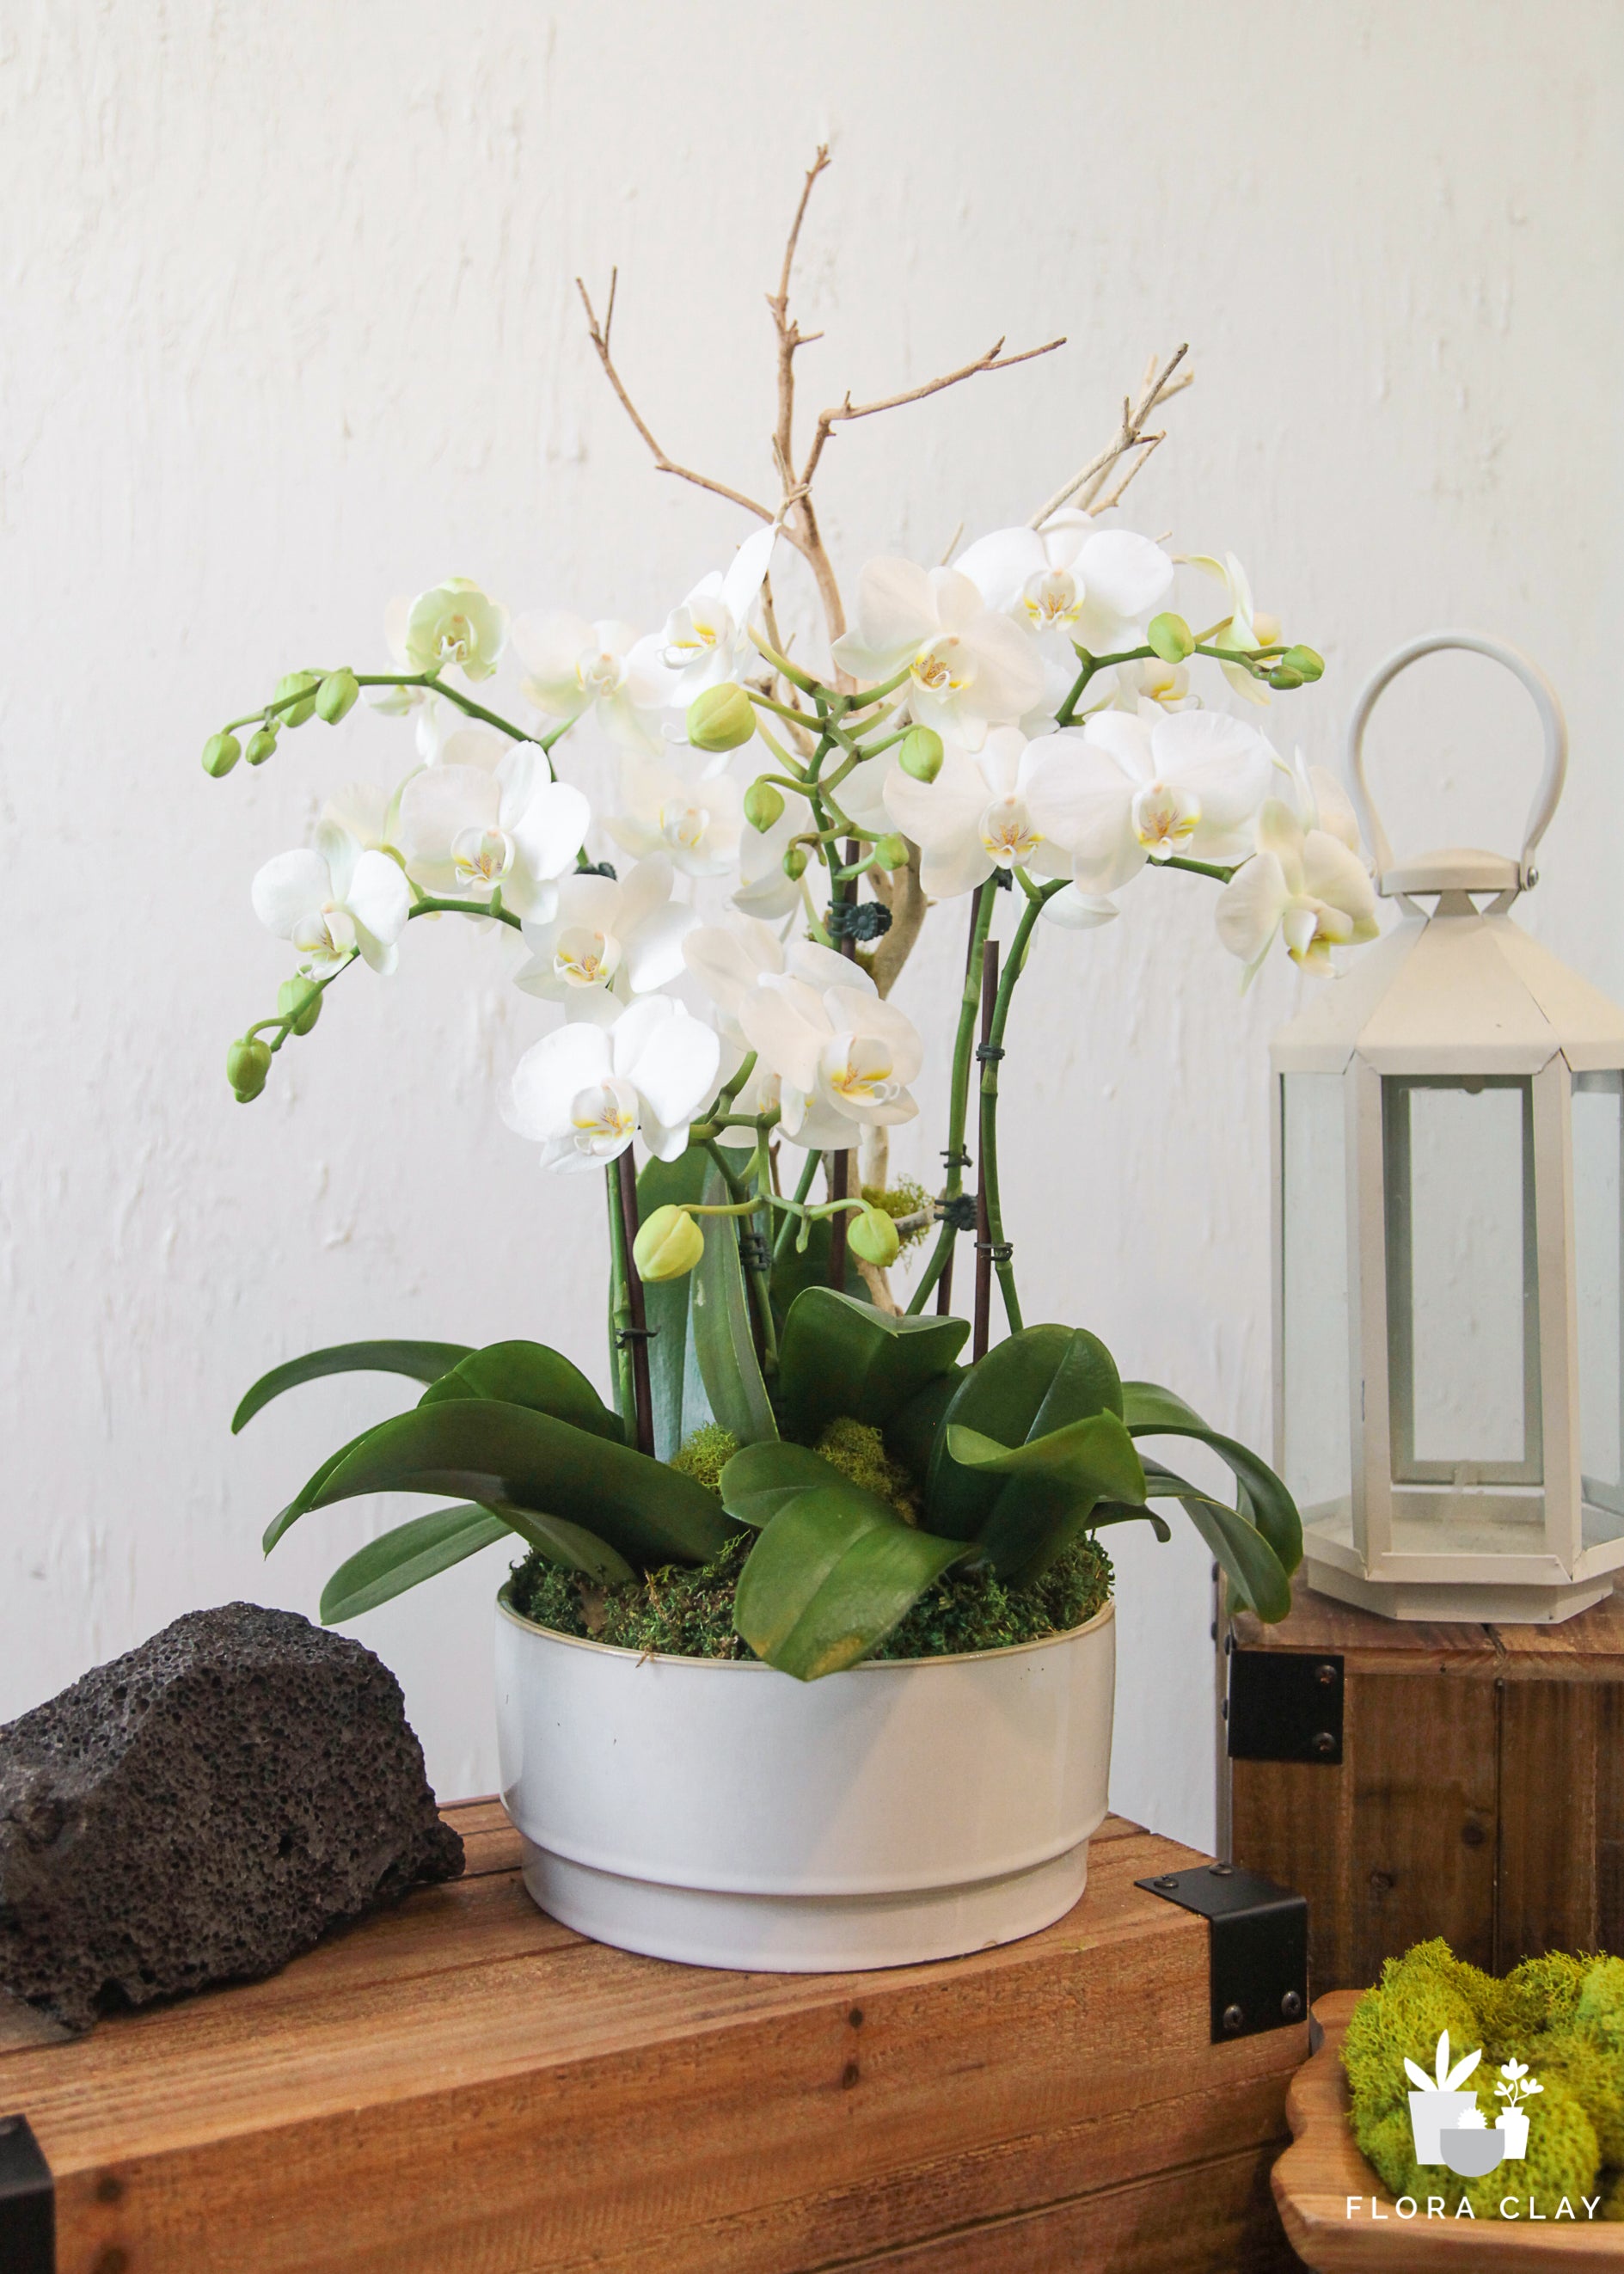 Carpe-diem-orchid-floraclay-6.jpg